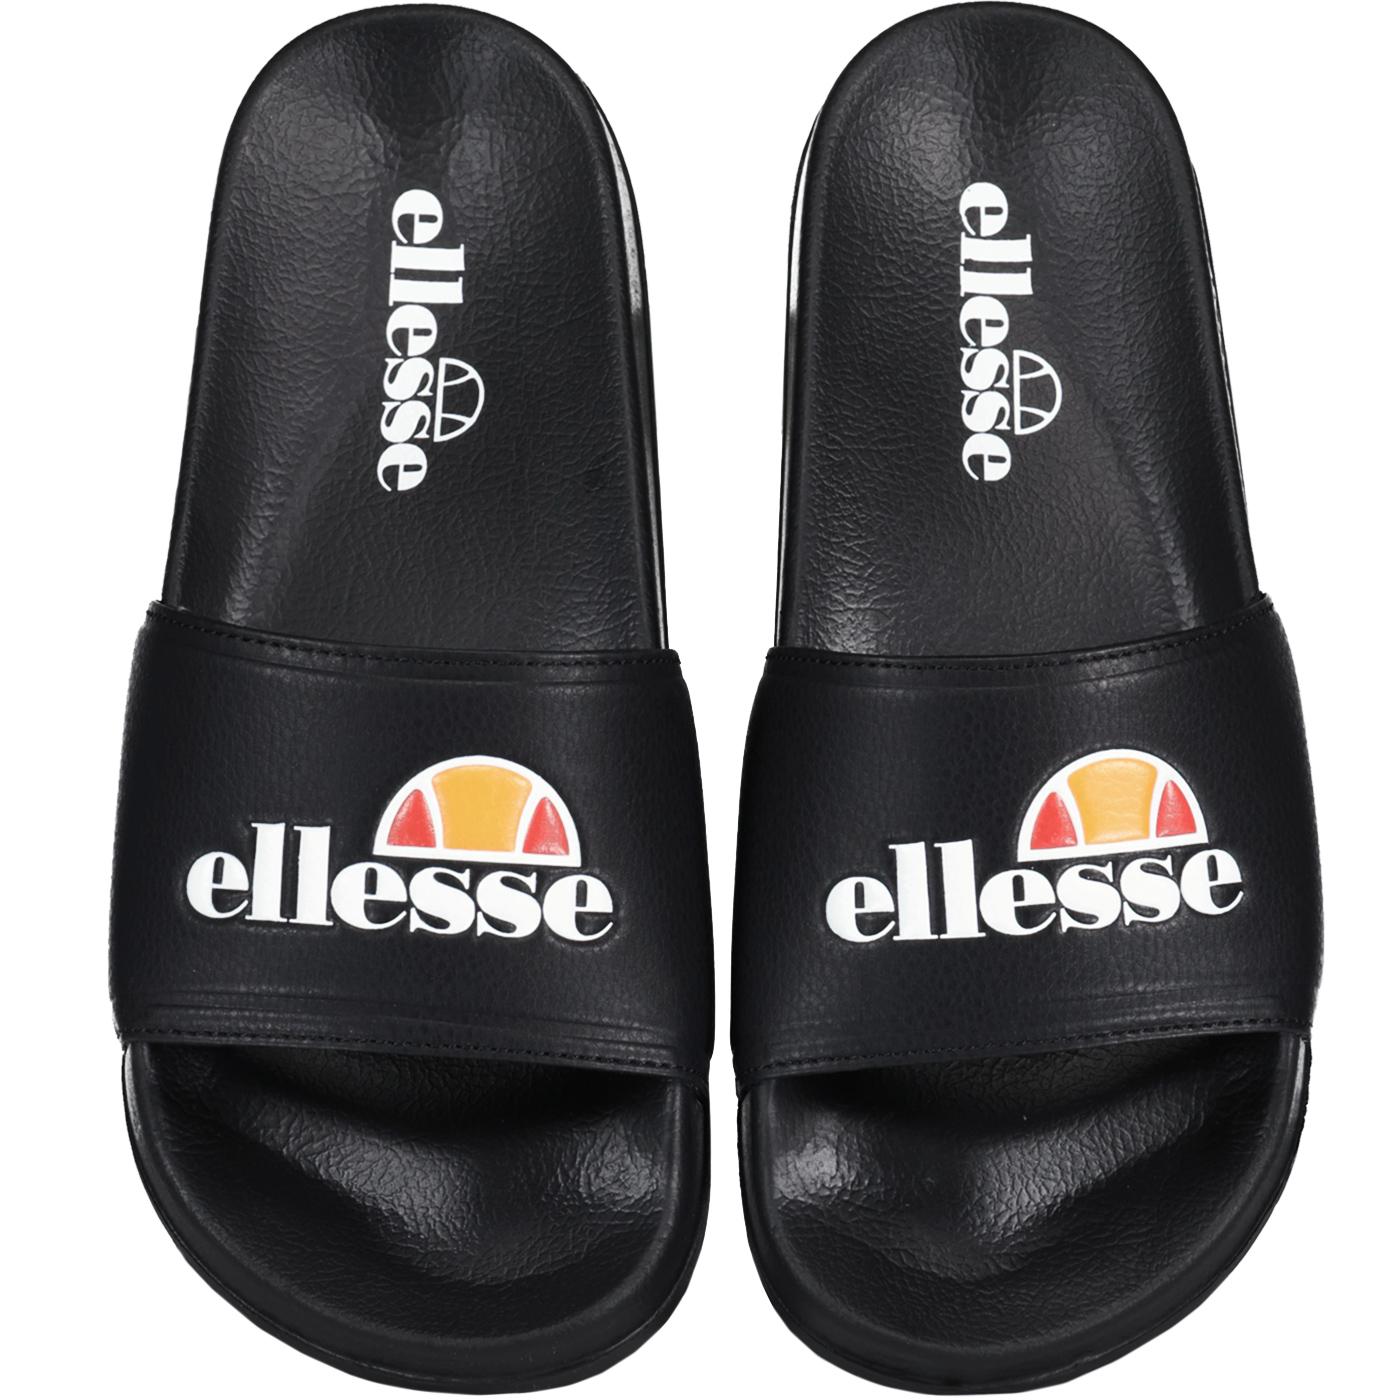 Filippo Ellesse Men's Retro Branded Sliders Black